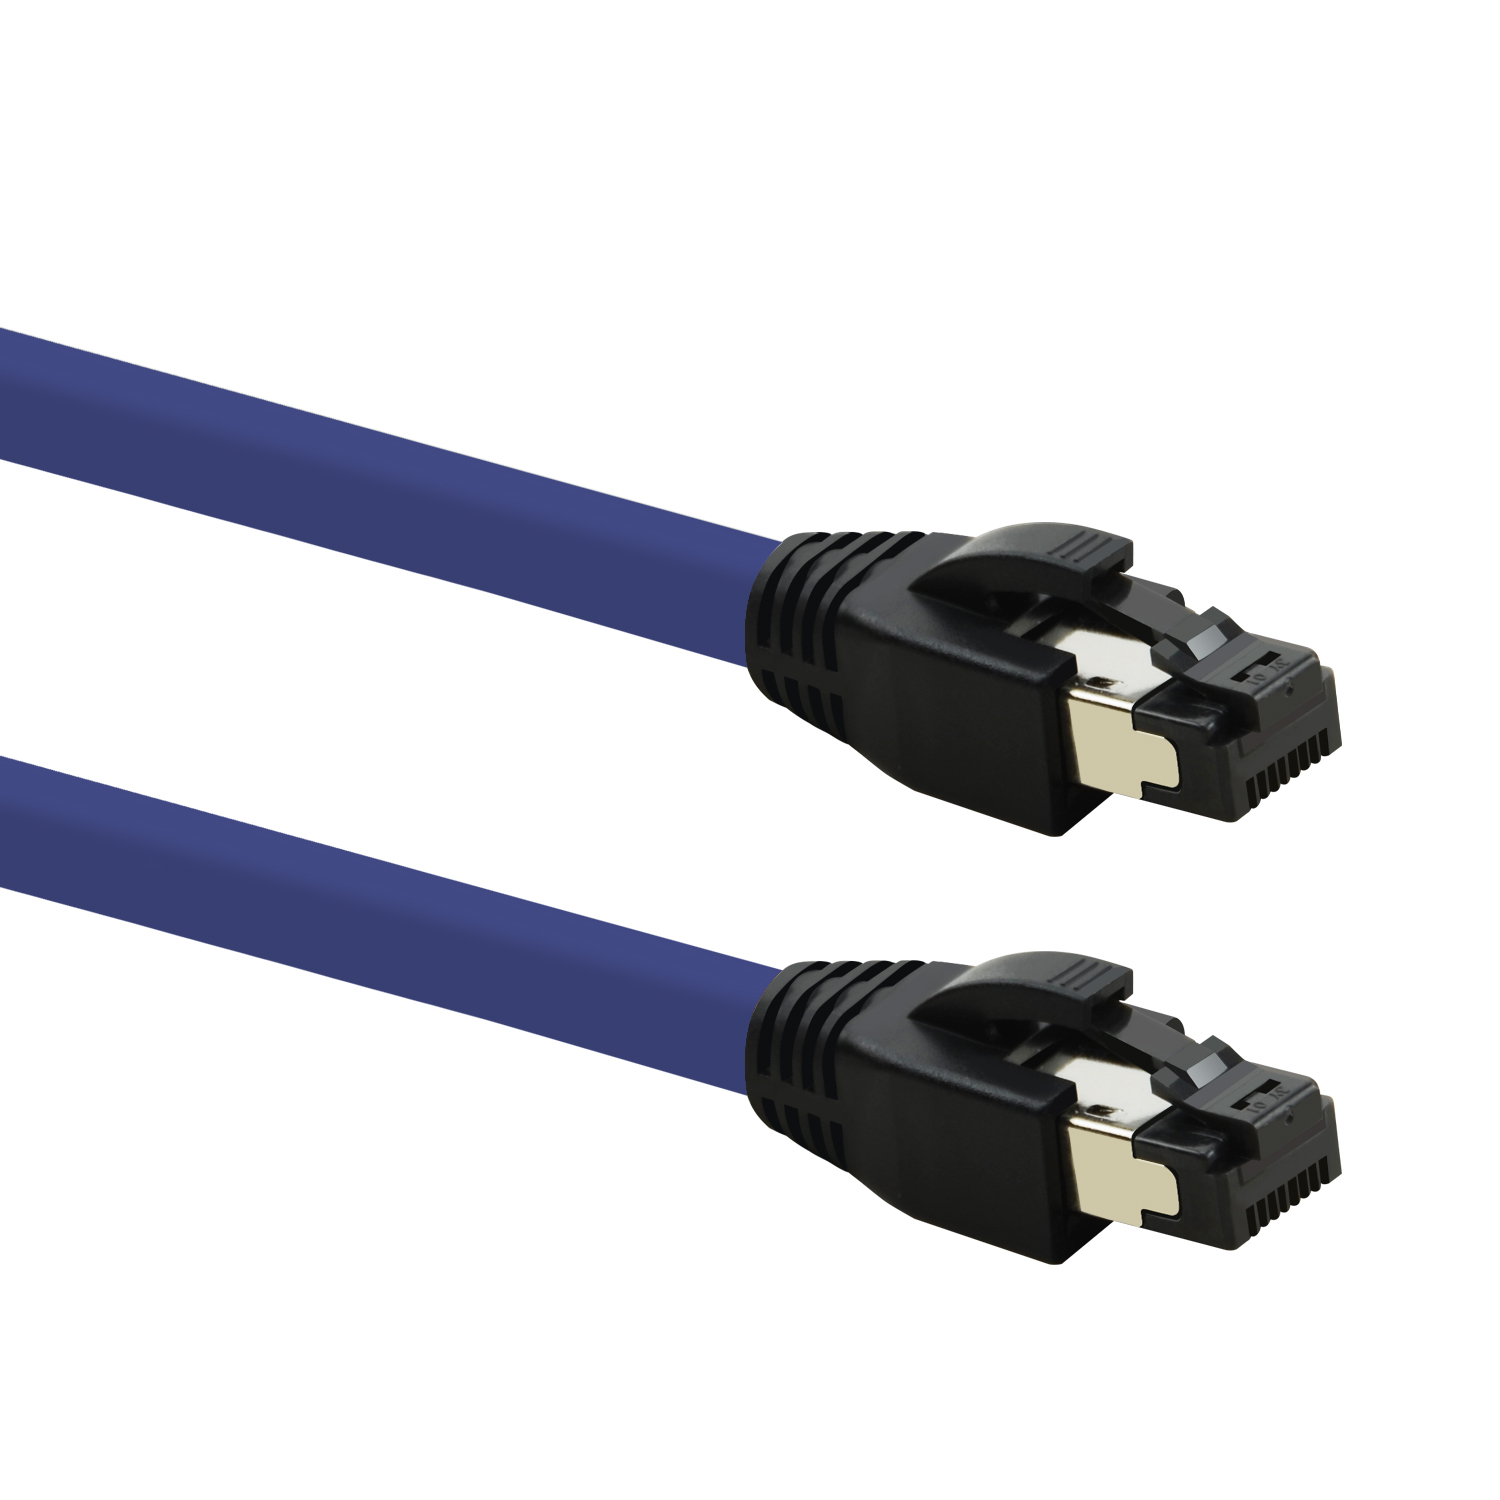 TPFNET 3m Patchkabel / violett, 40 Netzwerkkabel m S/FTP GBit, Netzwerkkabel, 3